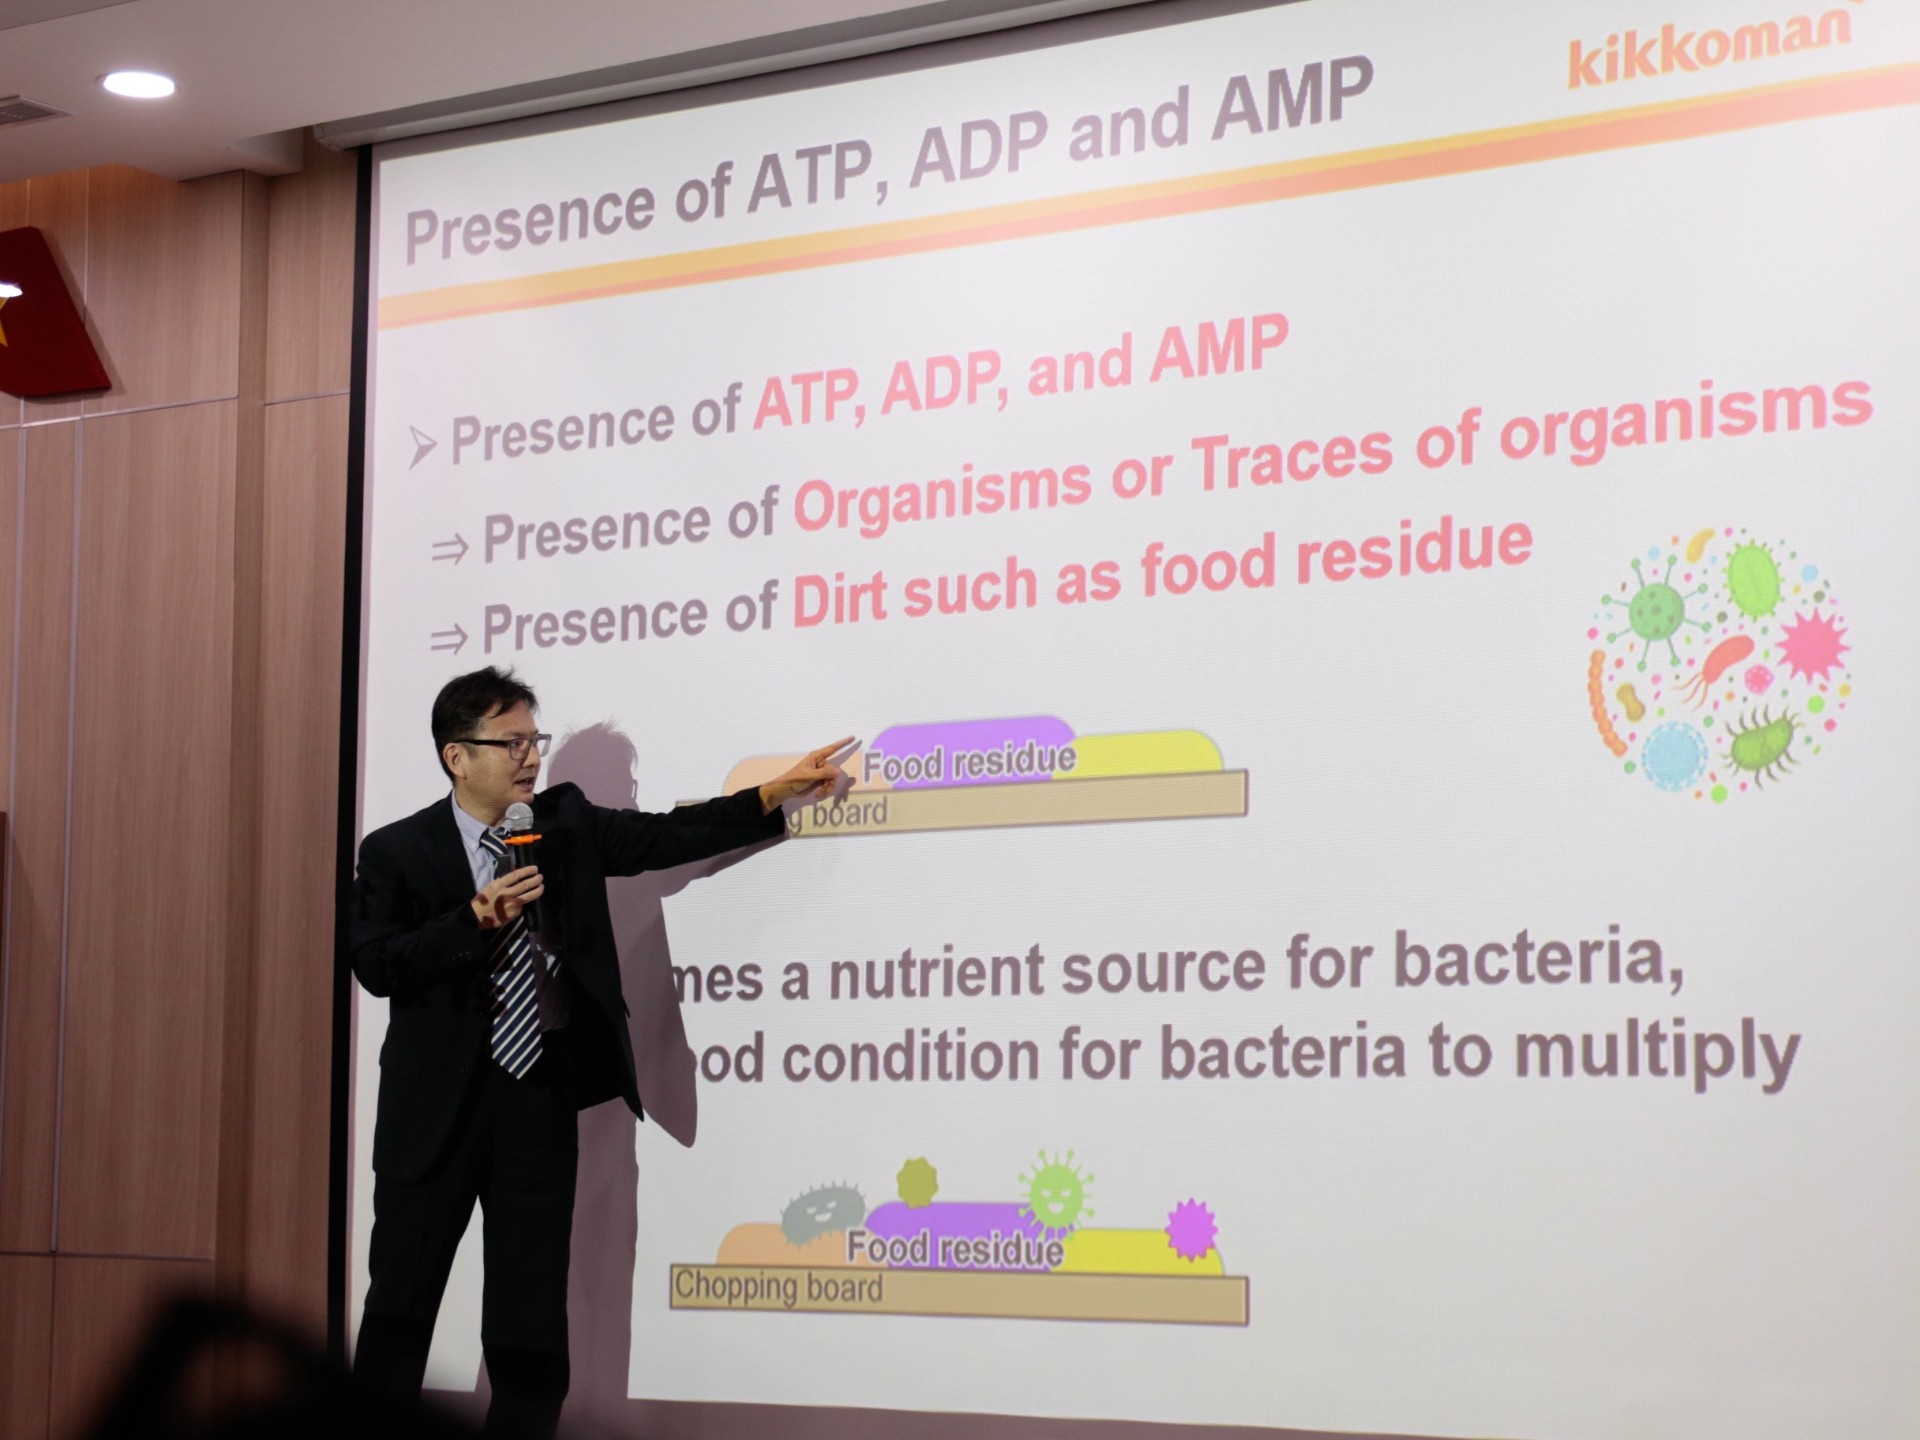 Chuyên gia Kikkoman trình bày cơ chế hoạt động của phép đo ATP